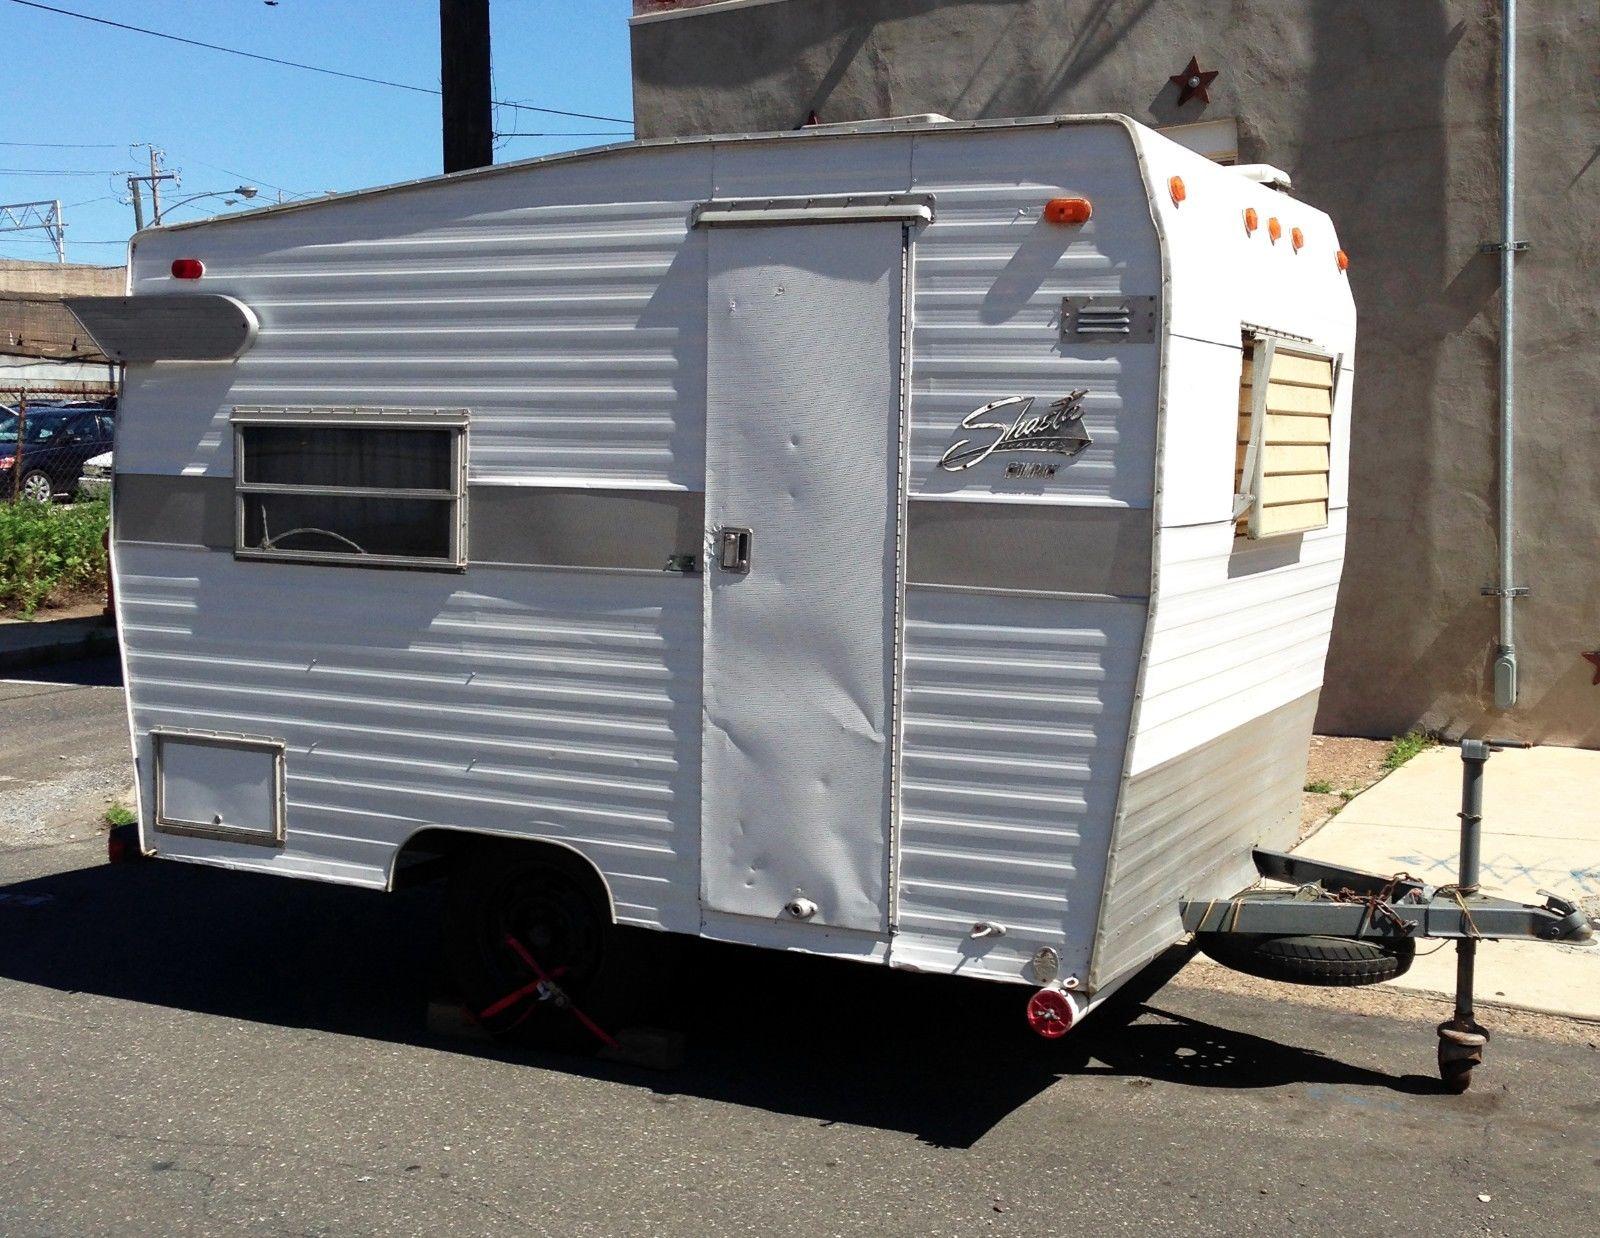 Vintage RV 1971 Shasta Compact camper for sale